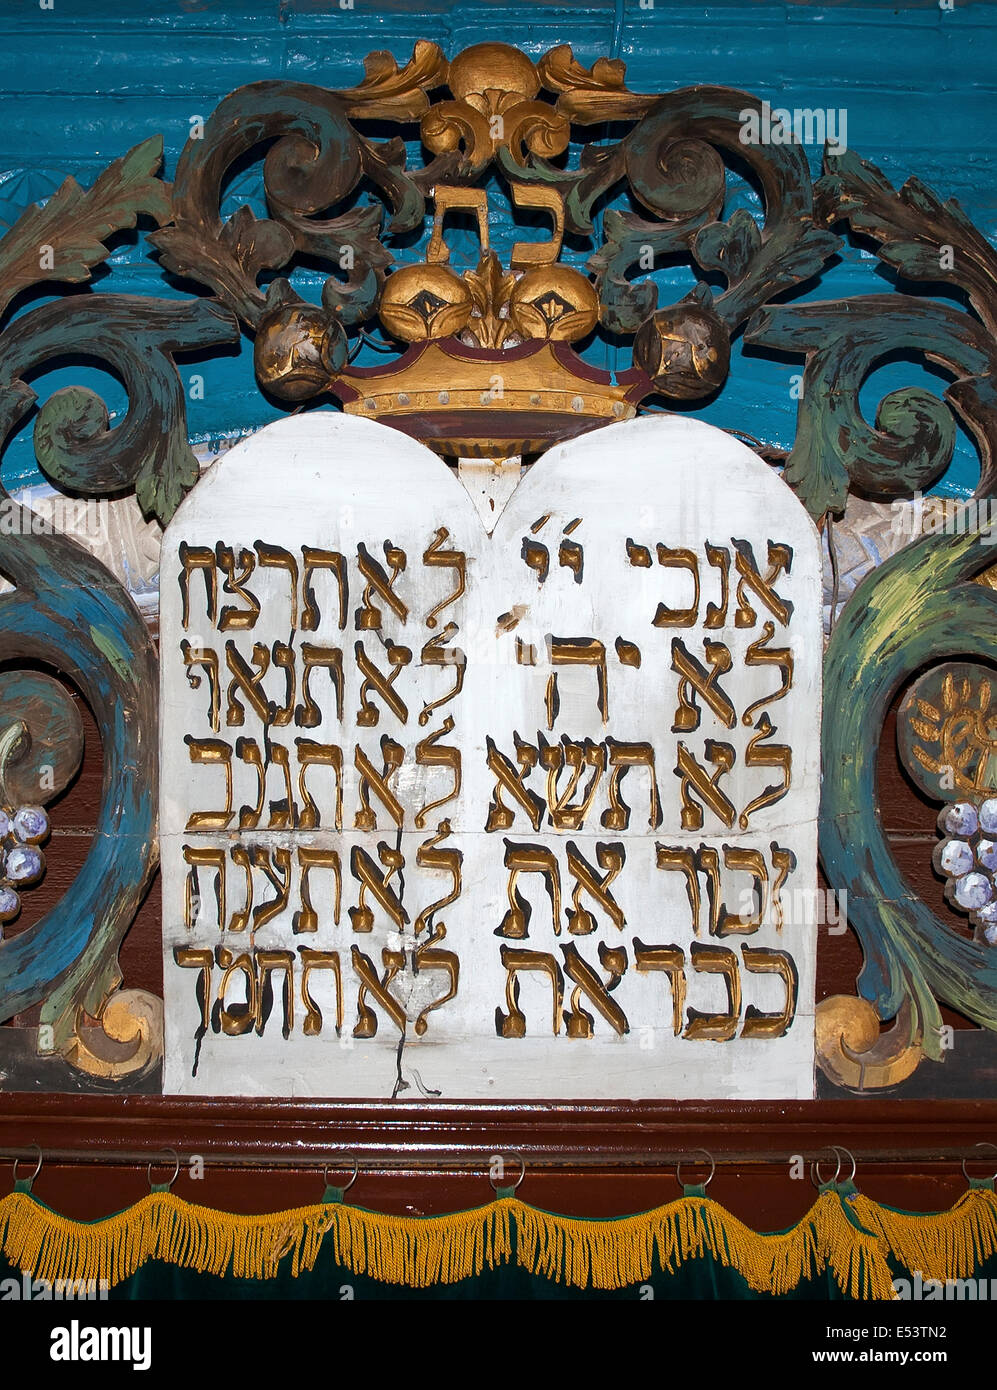 Ten commandments, Hebrew, Stock Photo